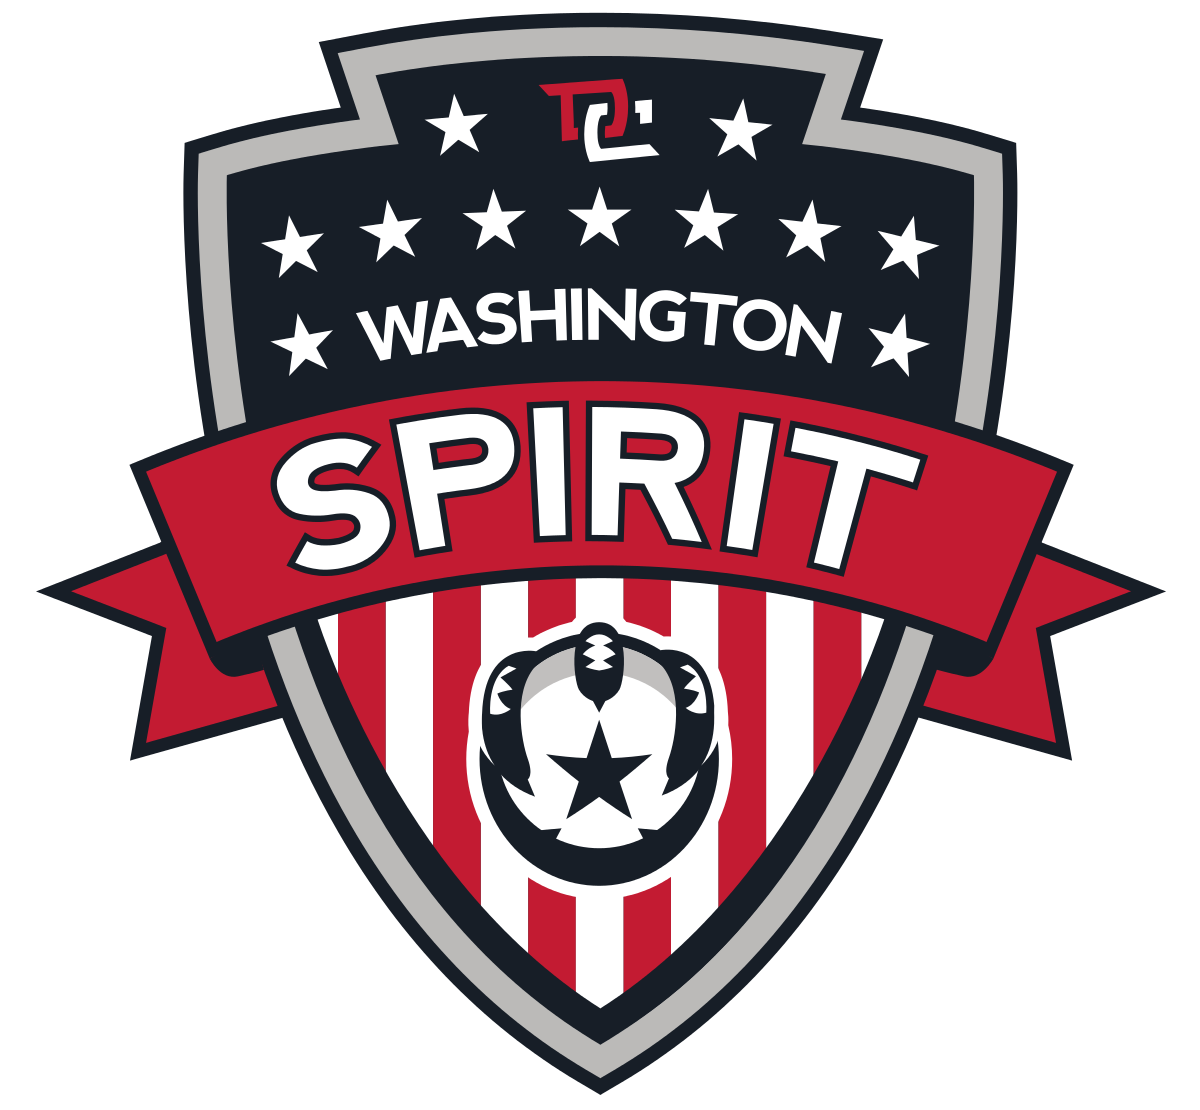 Washington_Spirit_logo.svg.png